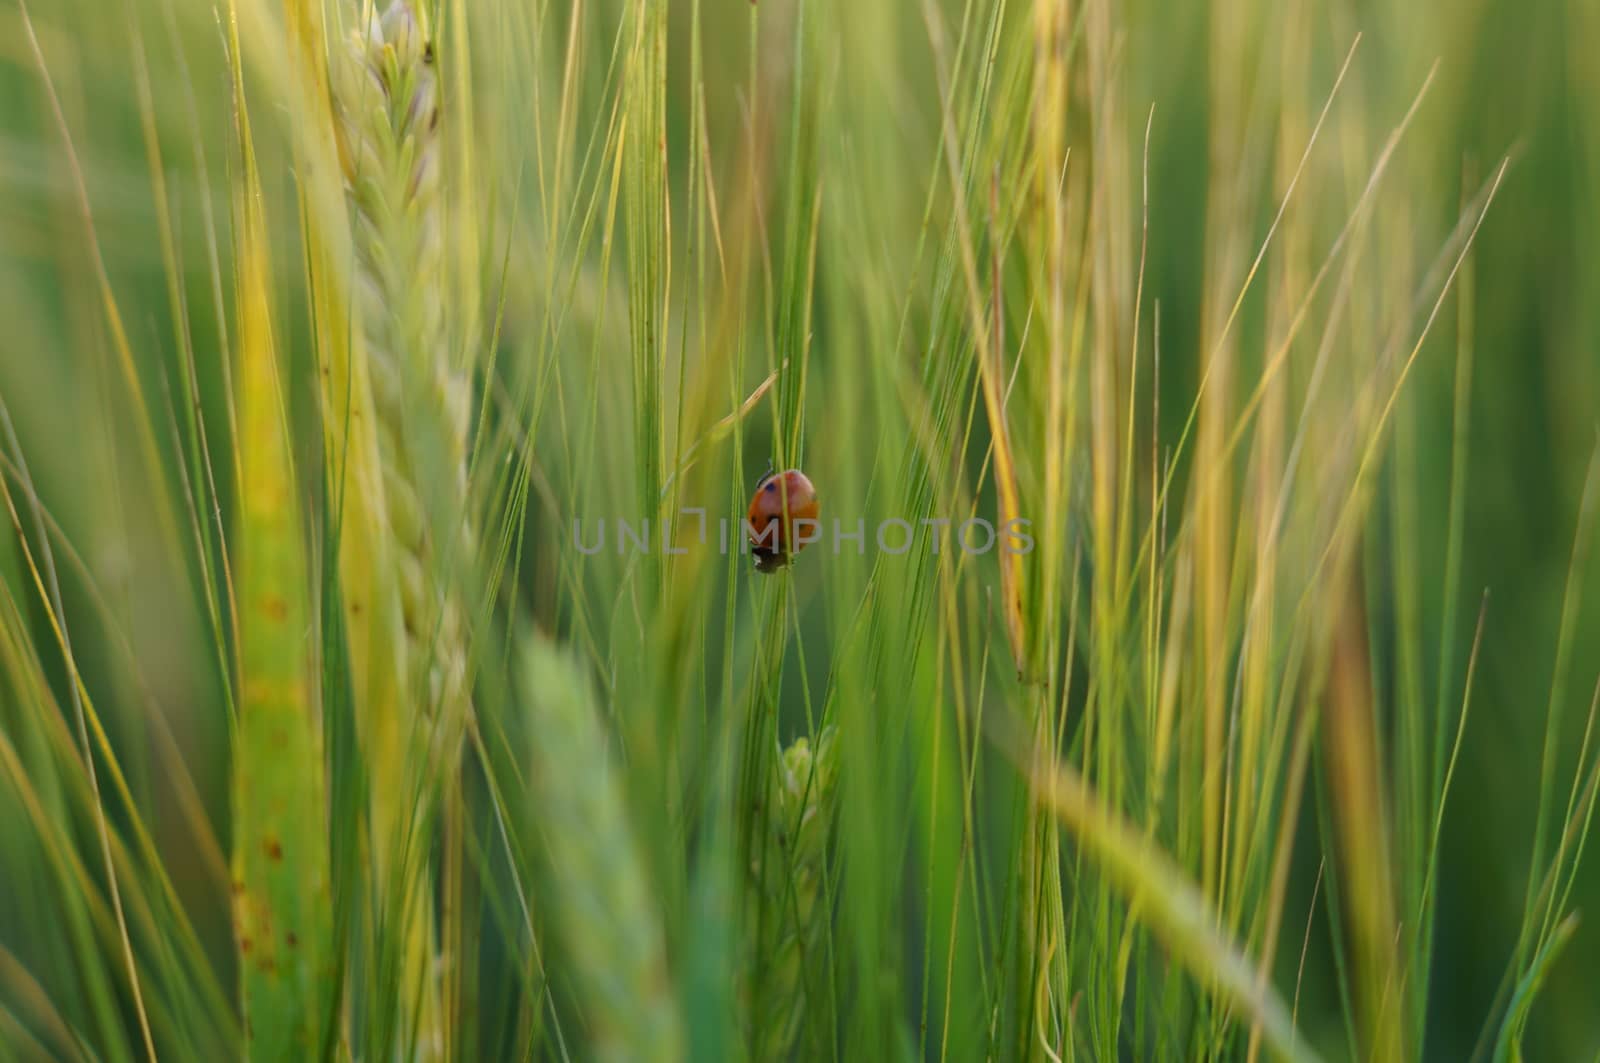 Ladybird on green grass